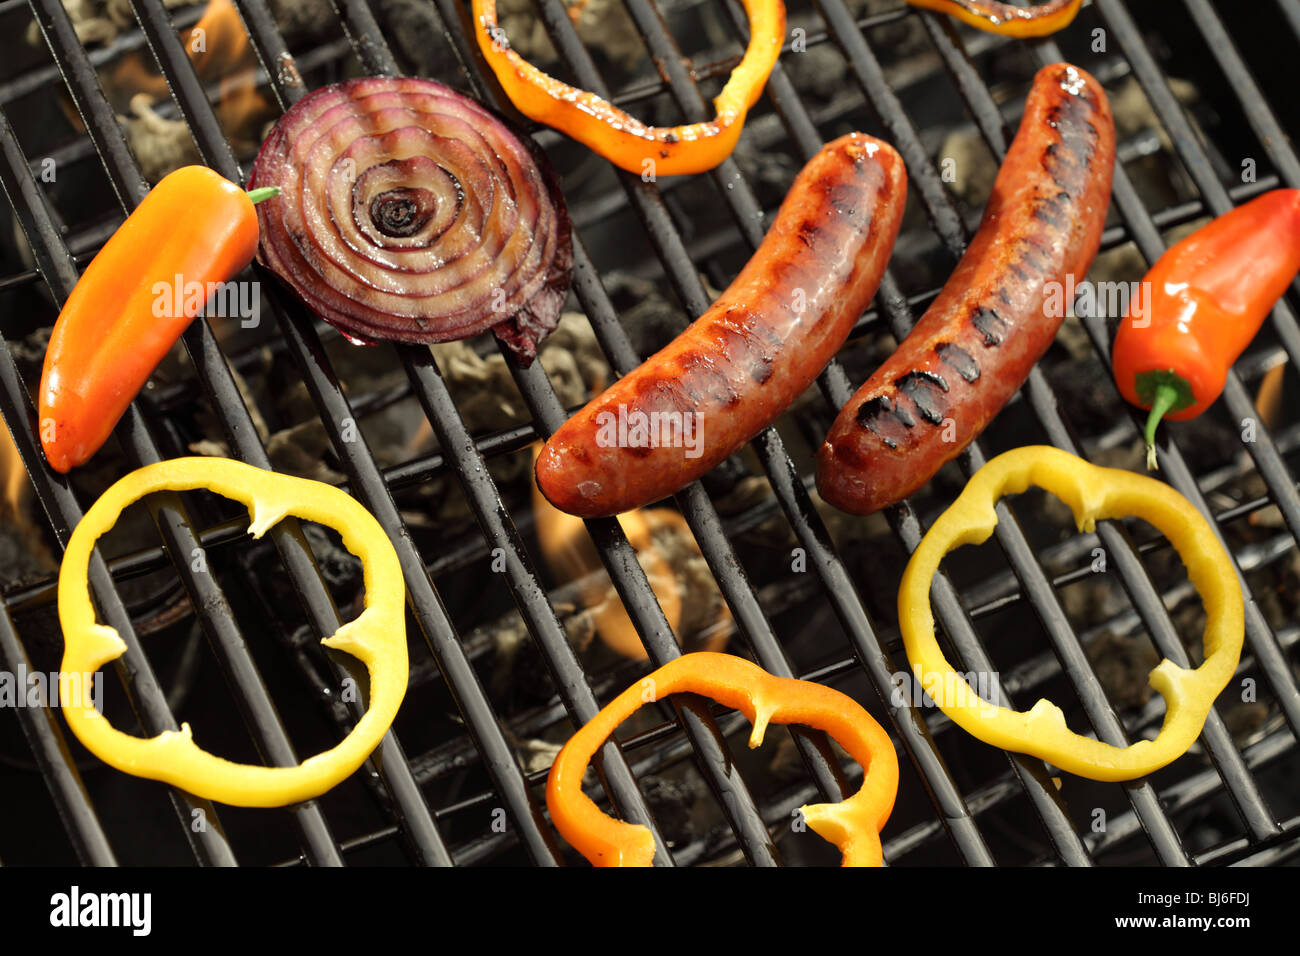 Wurst, Paprika und Zwiebeln auf grill Stockfoto